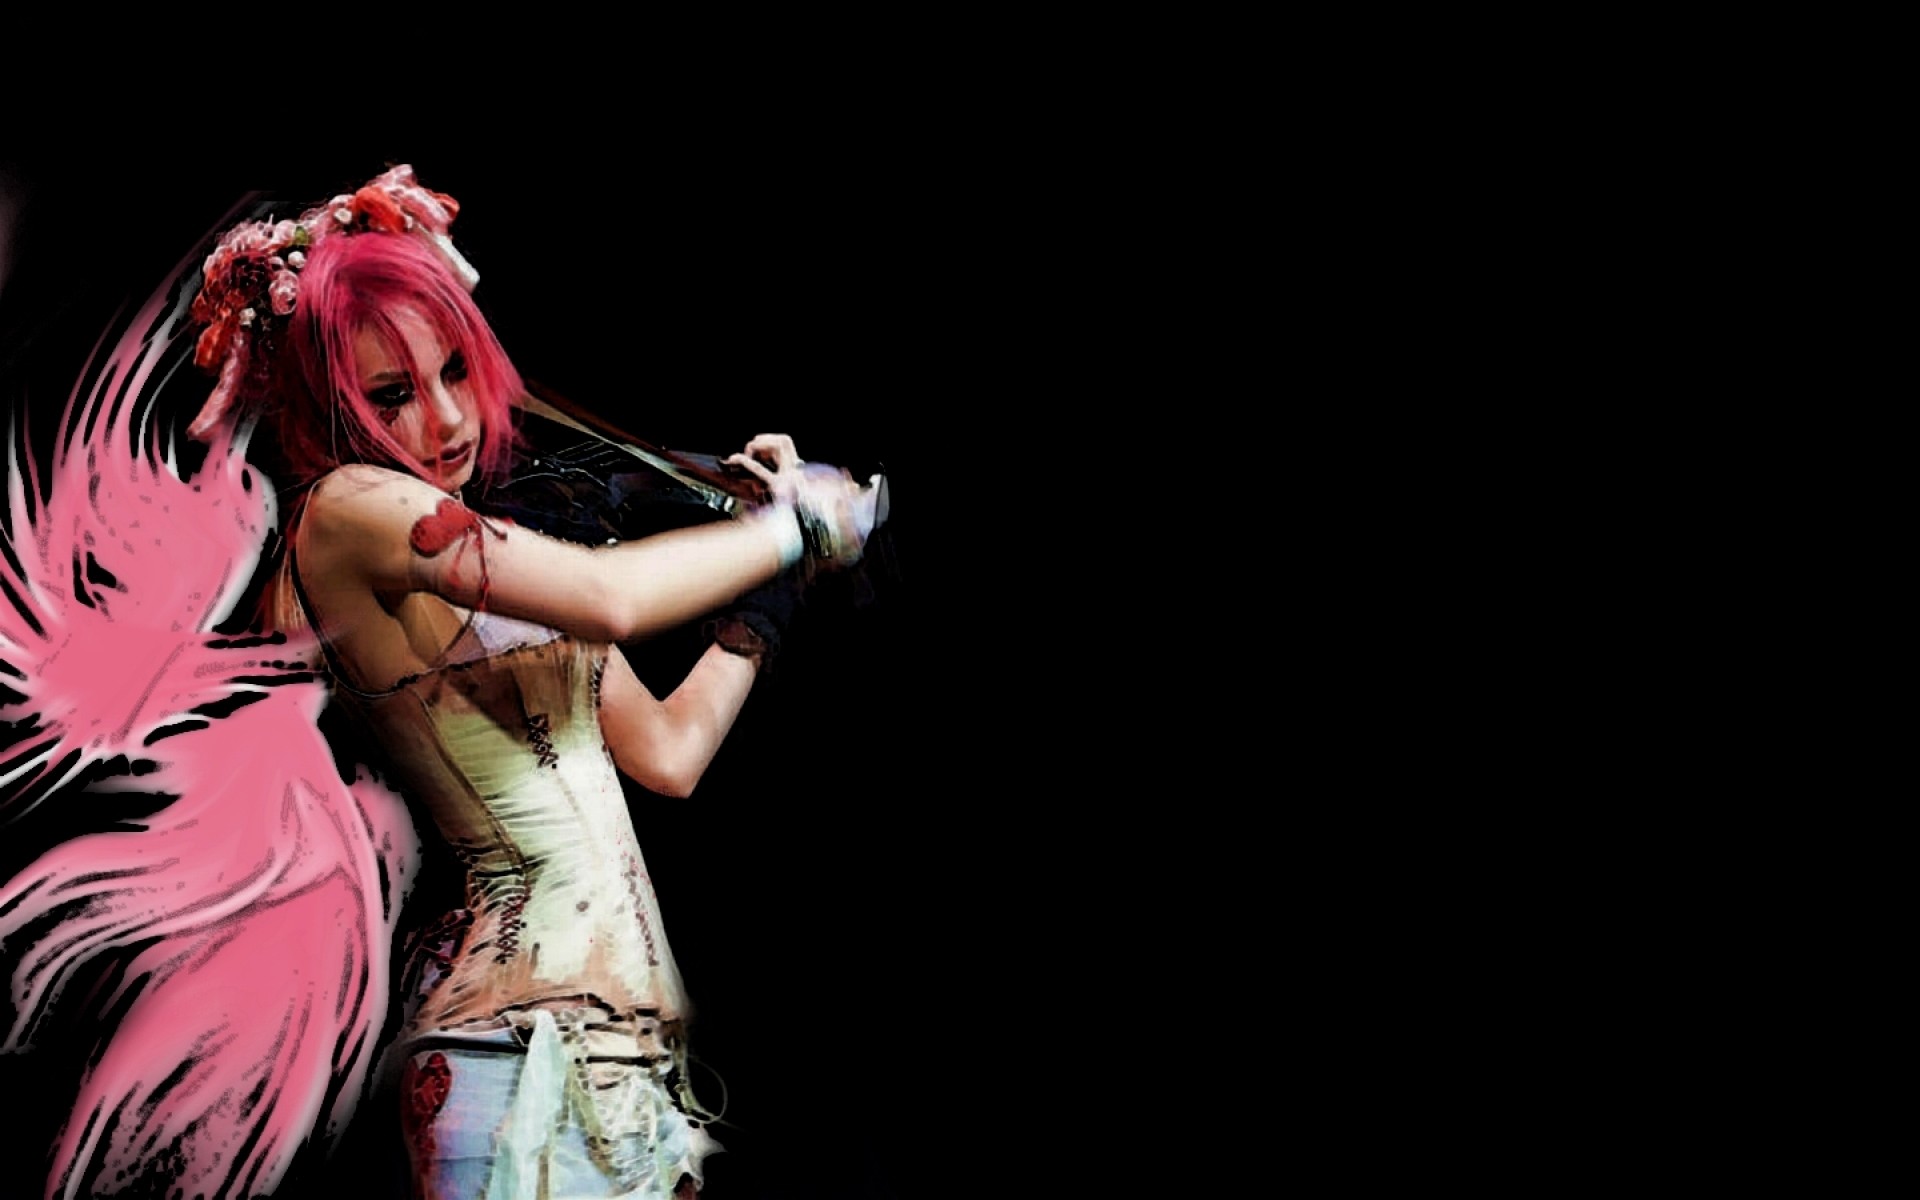 1920x1200 Emilie Autumn Liddell music singer songwriter poet 